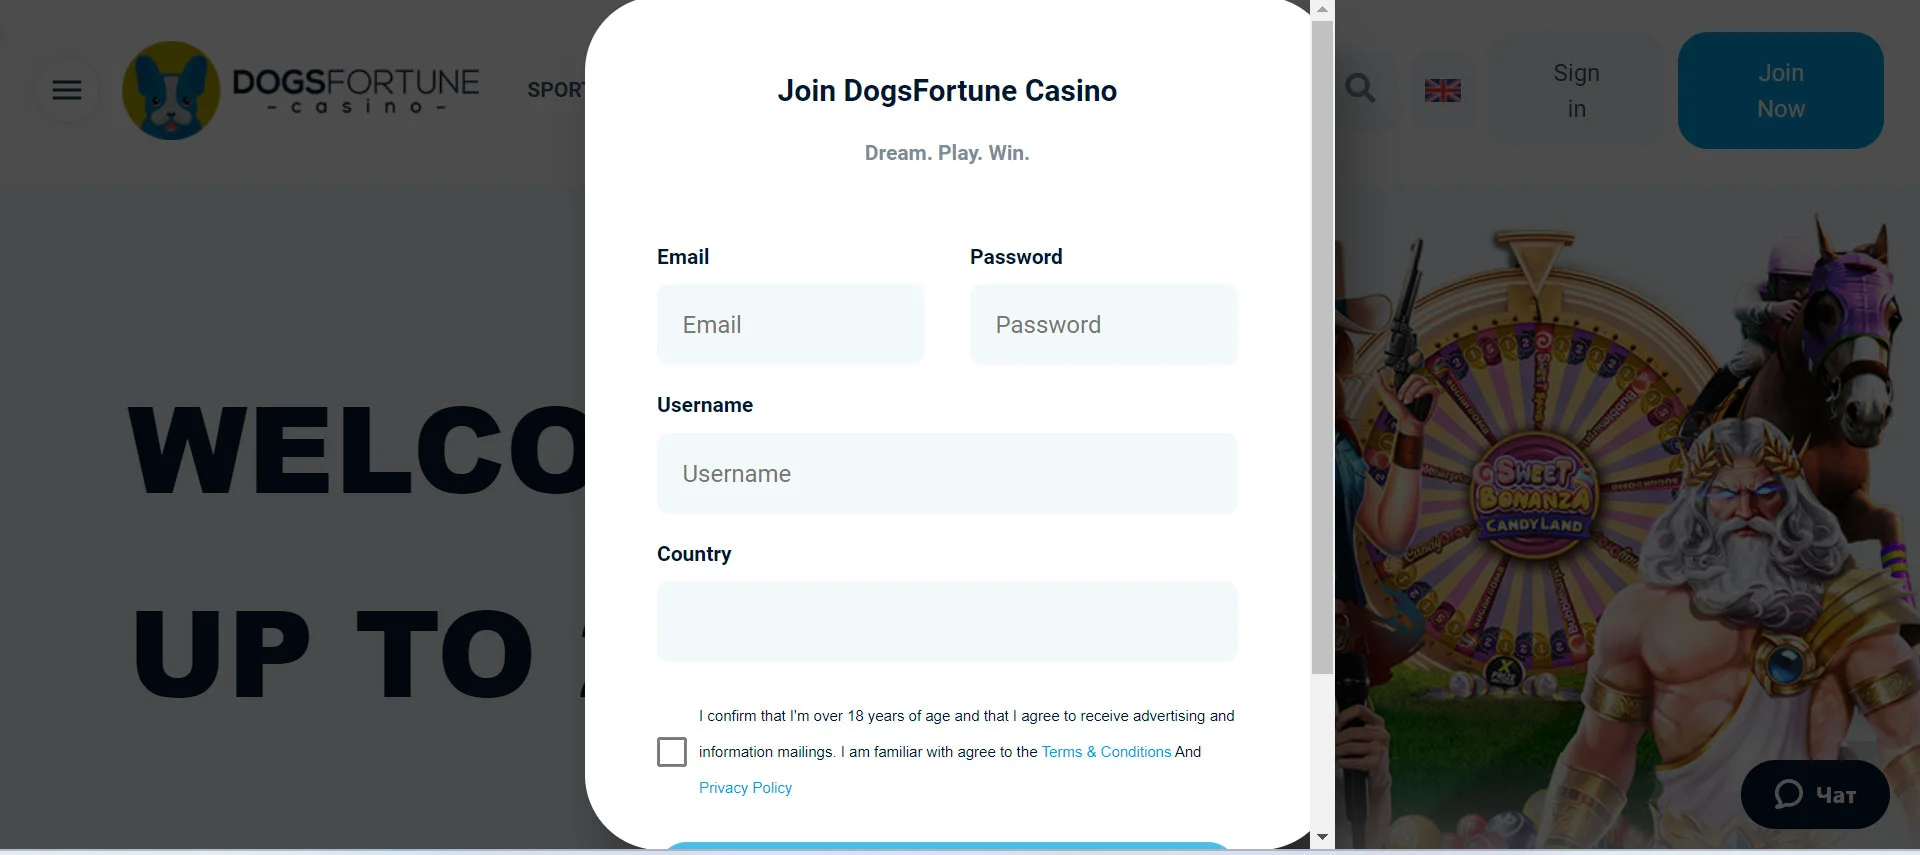 DogsFortune Casino Registration